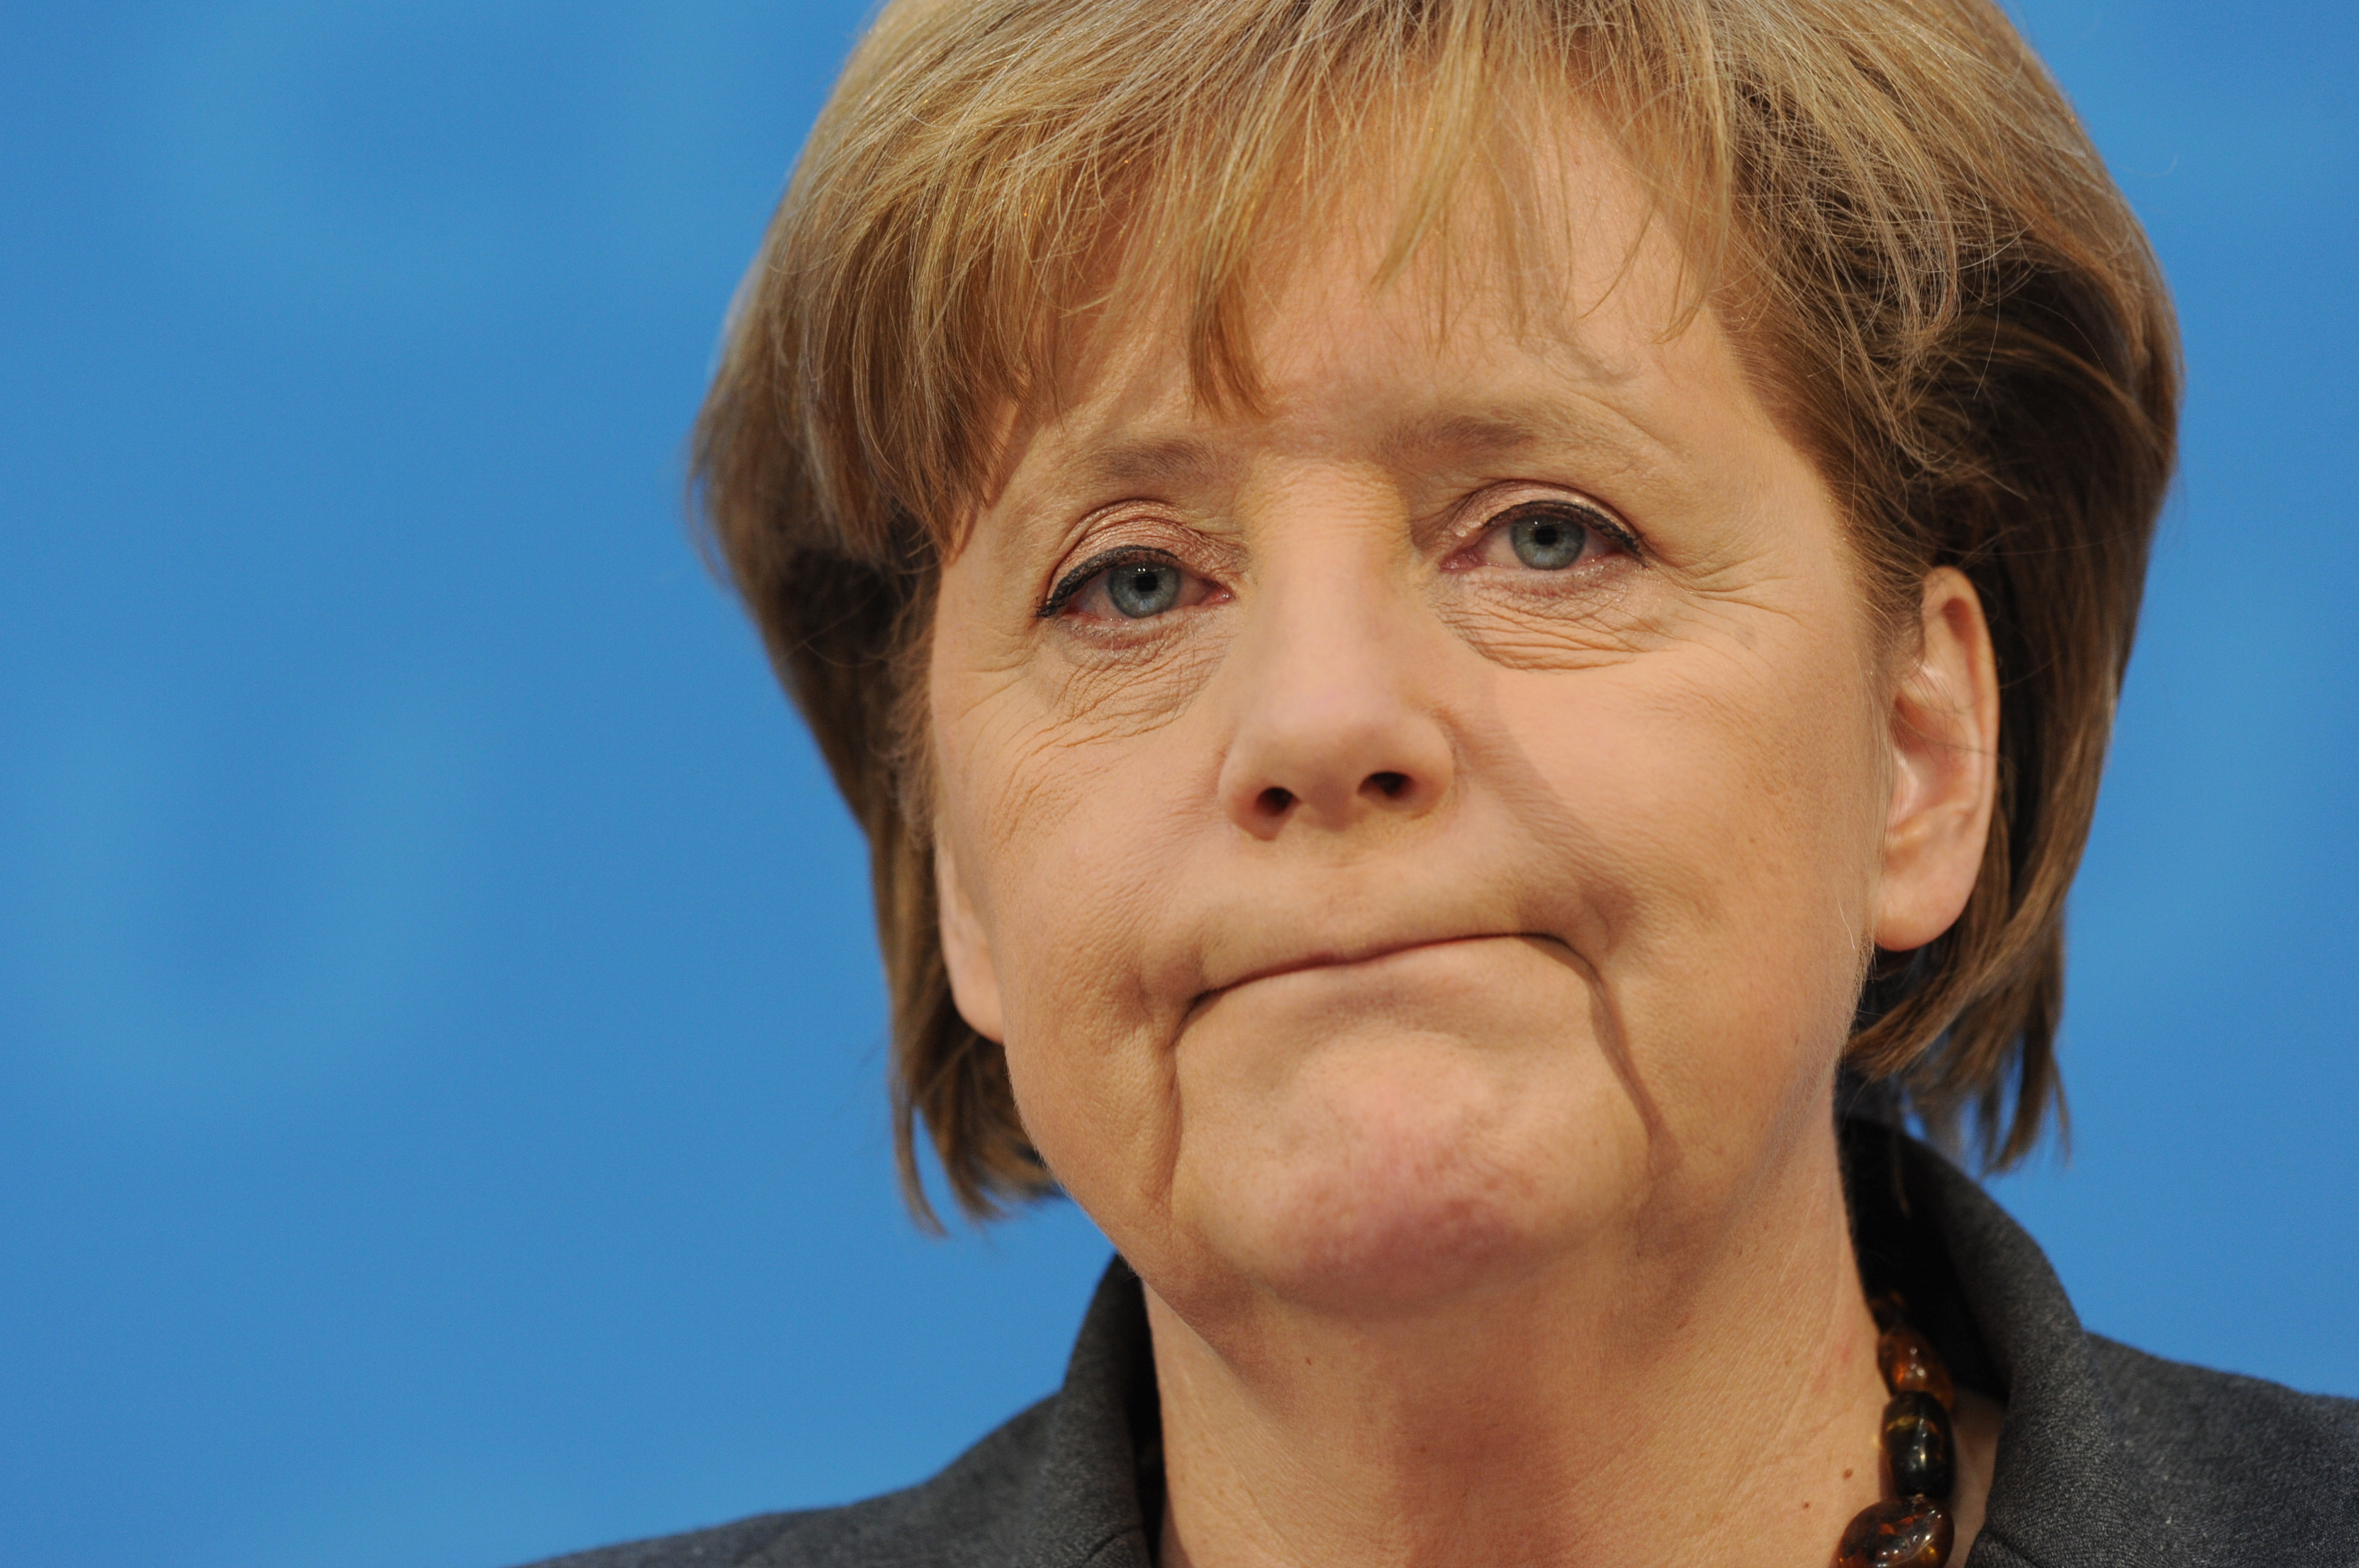 Declaraciones de Merkel sobre relación con EU y Reino Unido preocupan a analistas